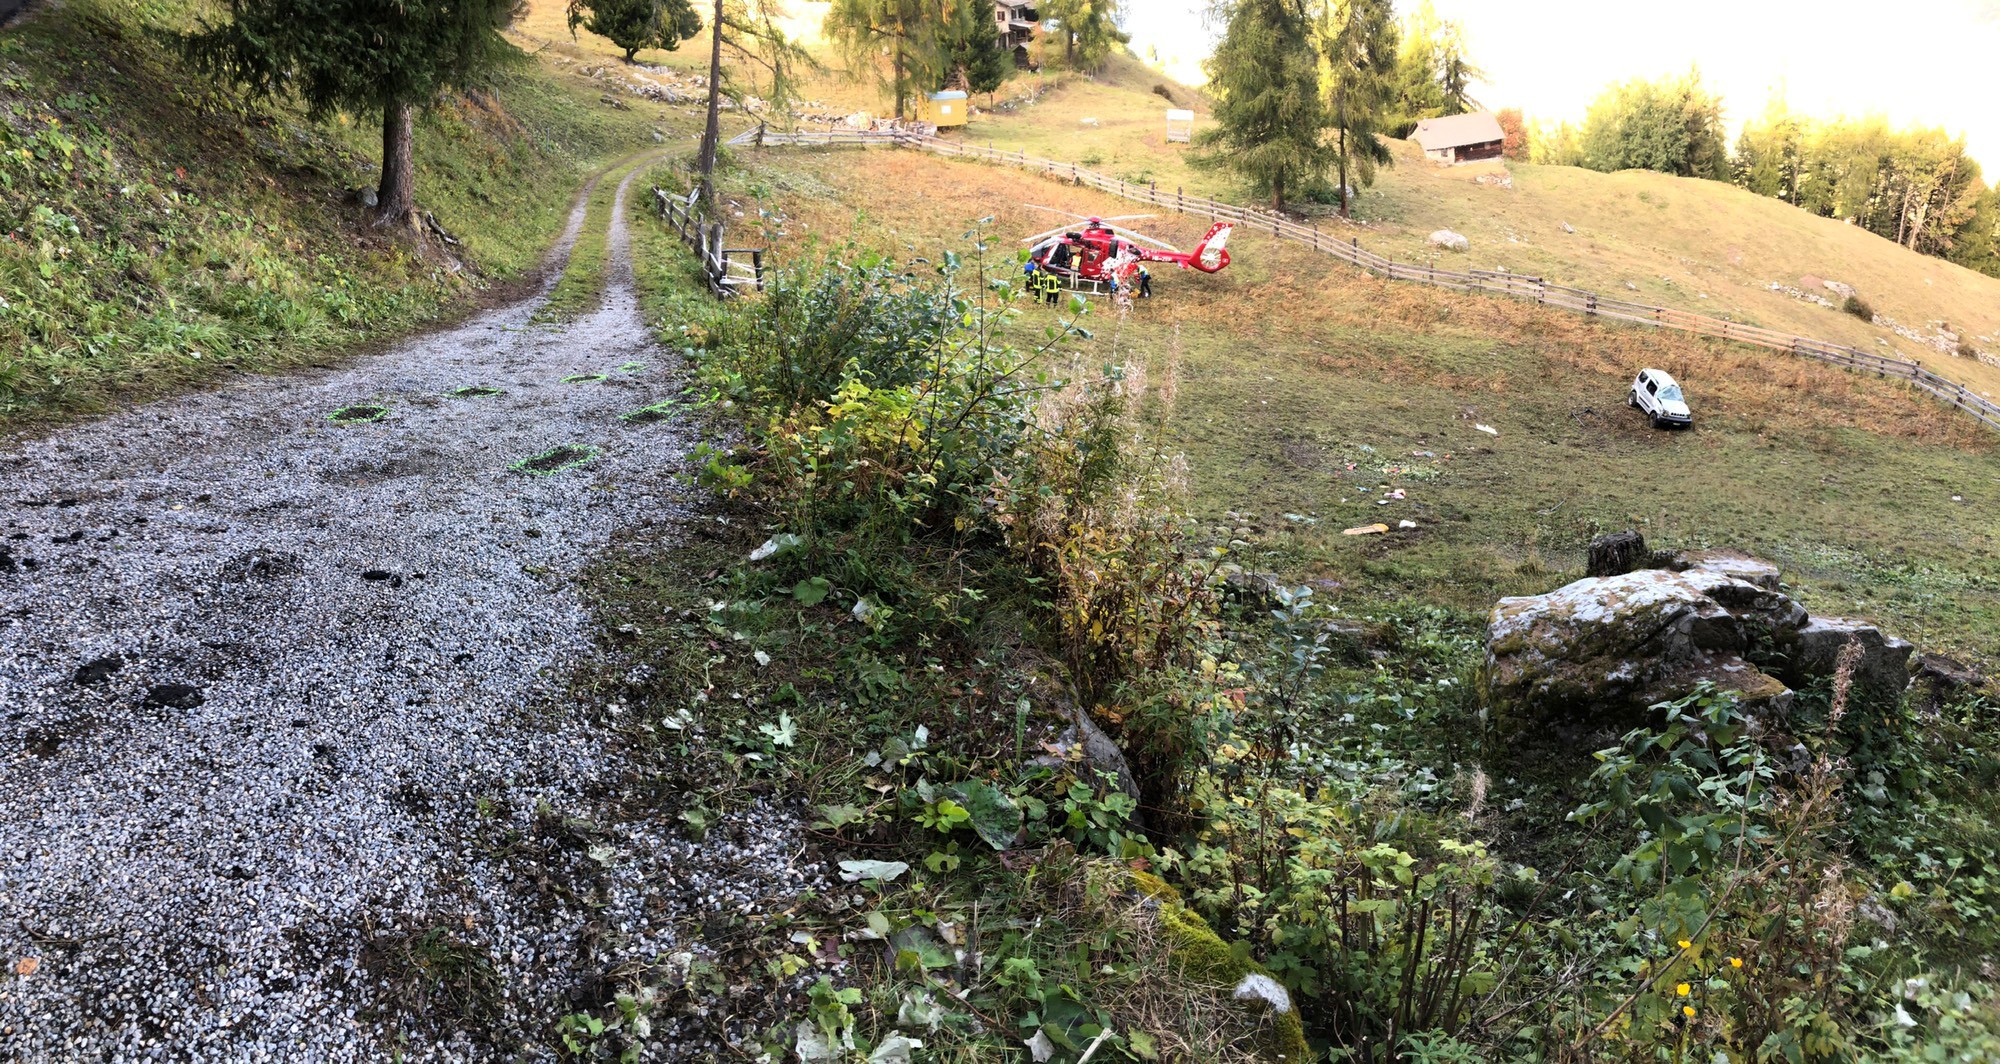 L'accident a eu lieu sur une route d’alpage au lieu-dit "Sofleu" à Haute-Nendaz.